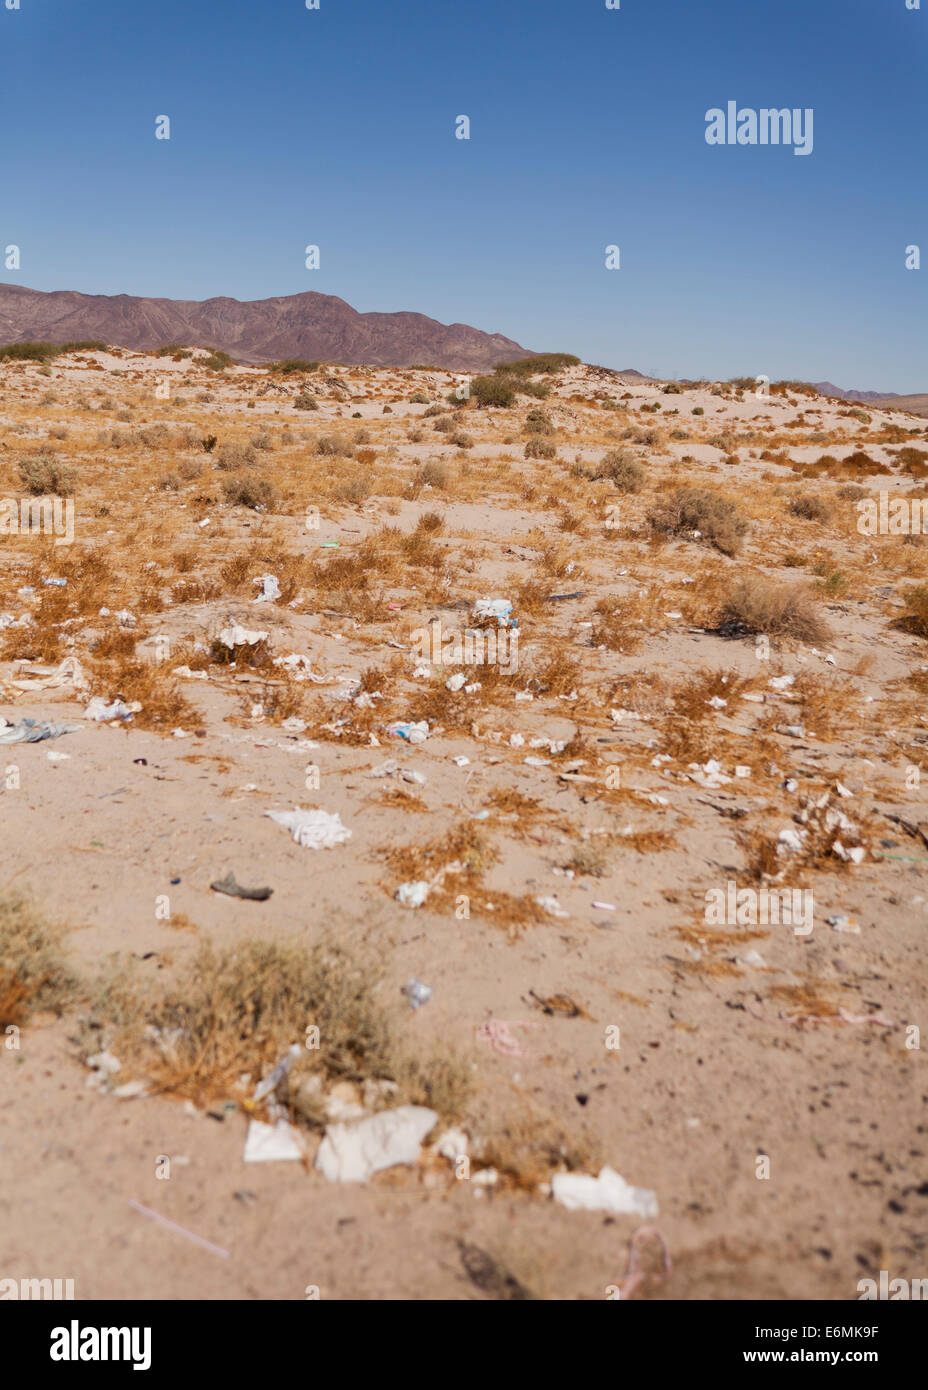 Litter along American Southwest desert  highway - Mojave desert, California USA Stock Photo